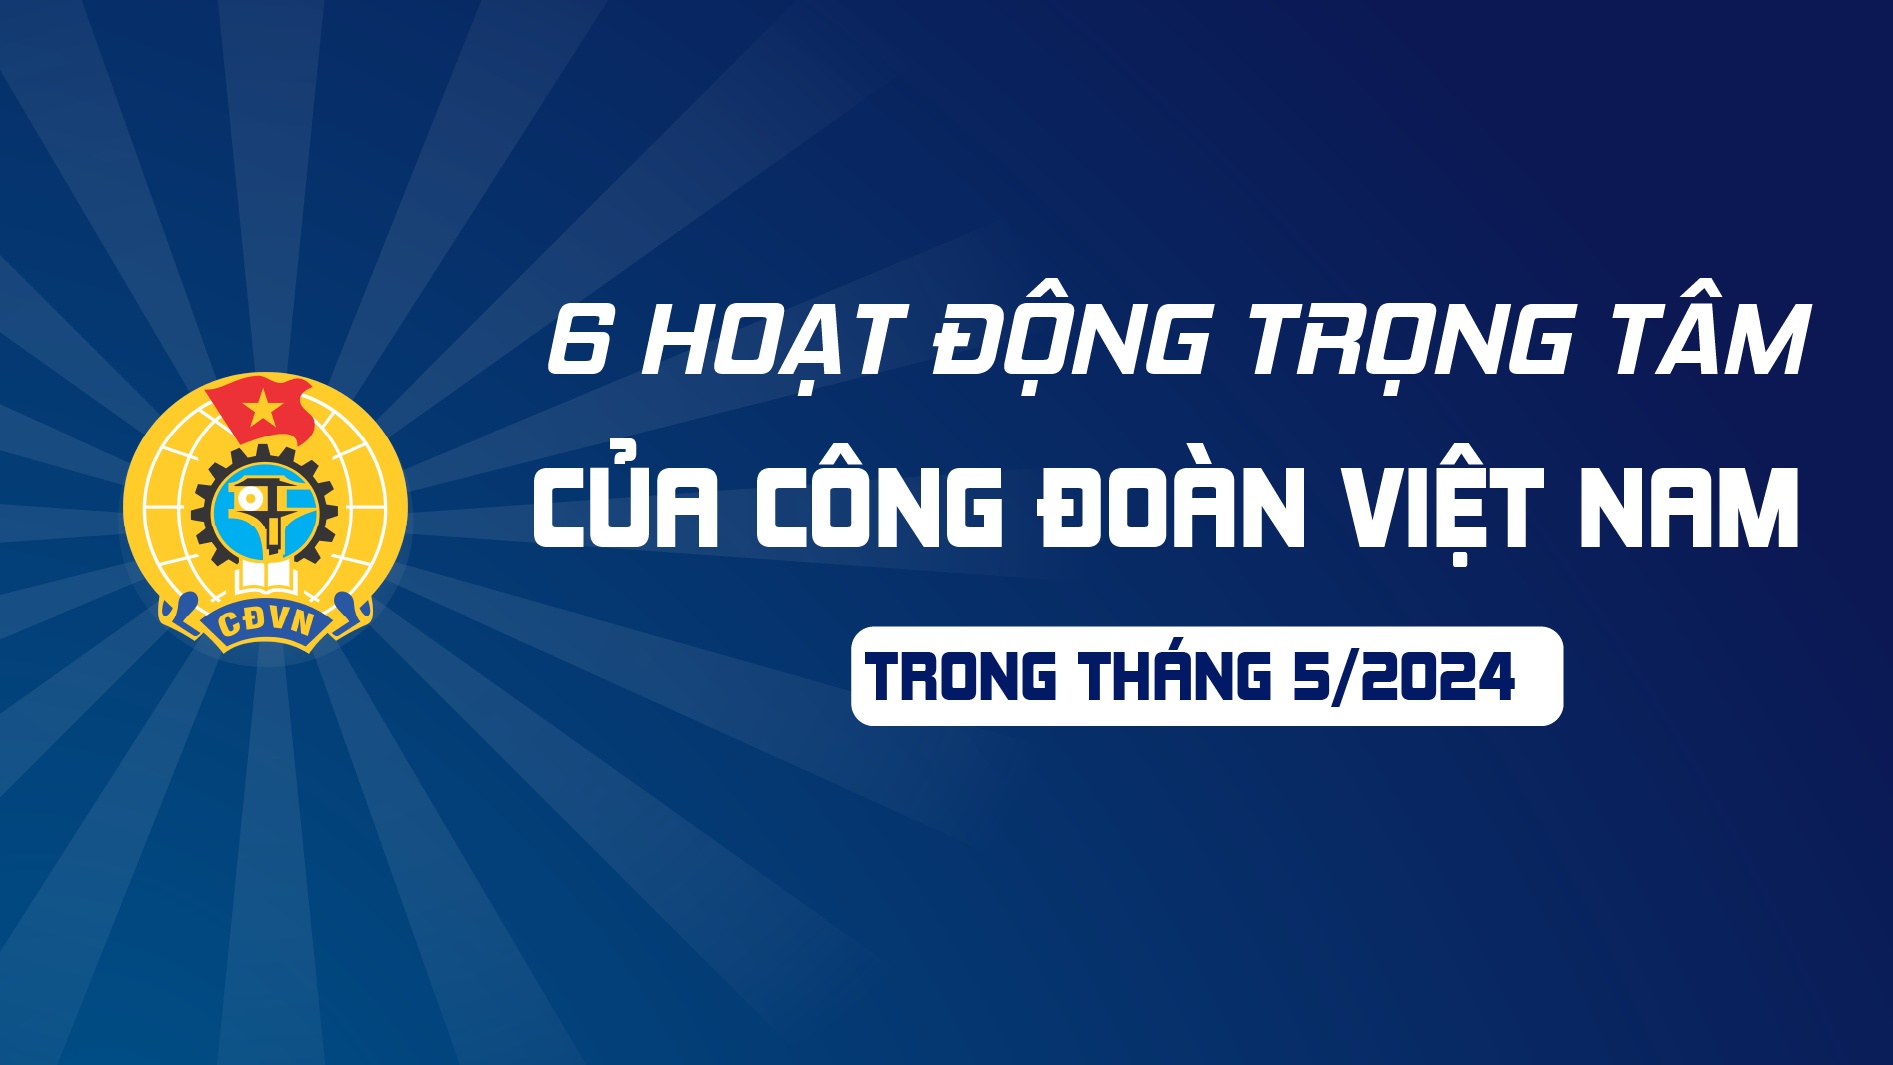 6 hoạt động trọng tâm của Công đoàn Việt Nam trong tháng 5/2024